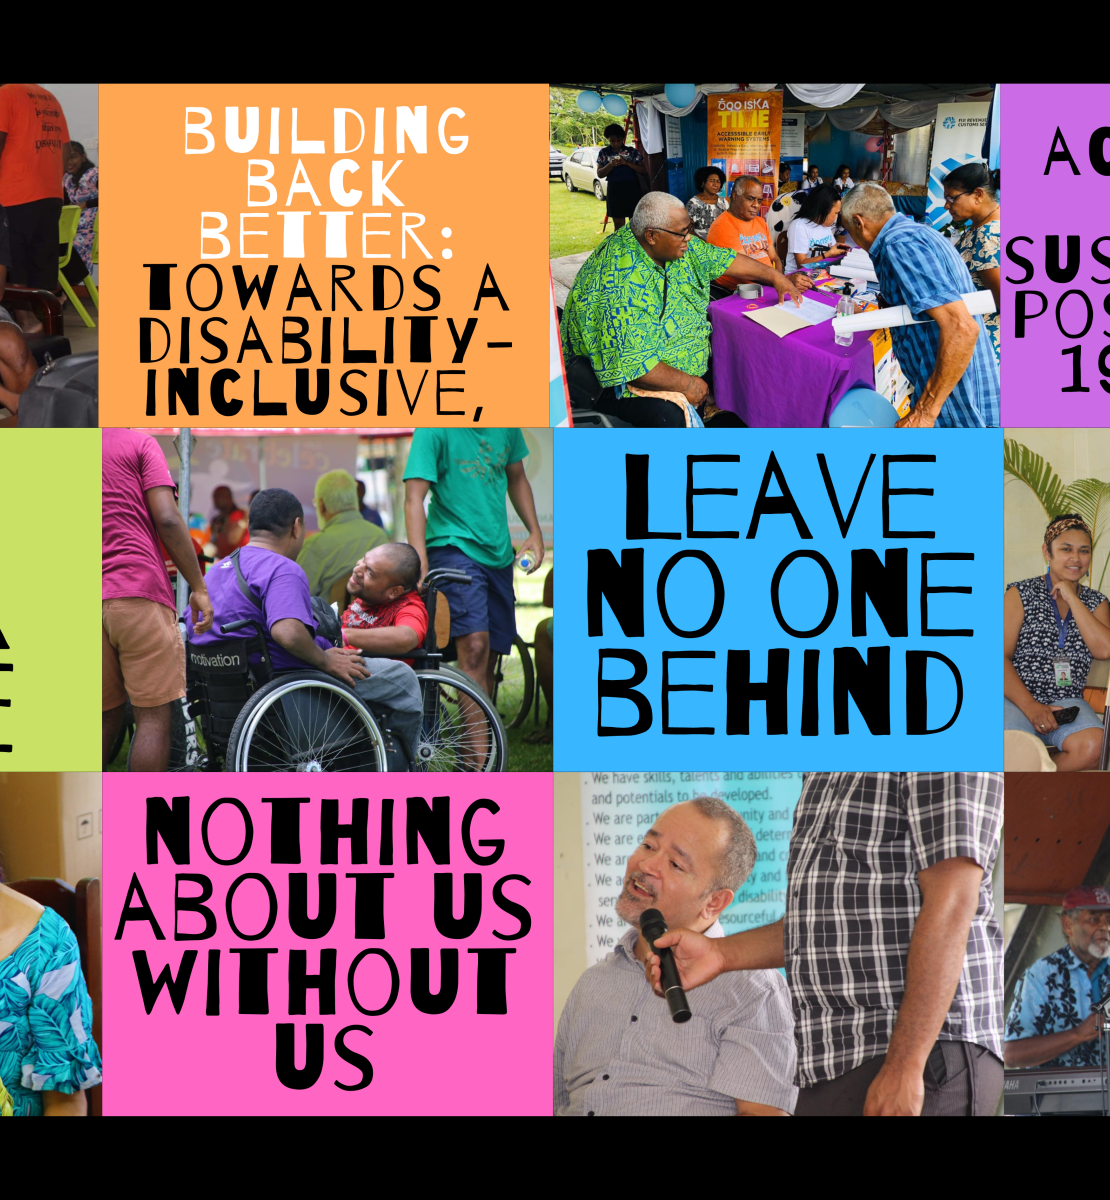 مجموعة من الكلمات والصور توضح الطرق المختلفة التي تساعد بها الأمم المتحدة في تحقيق أهداف التنمية المستدامة من خلال مساعدة الأشخاص ذوي الإعاقة.